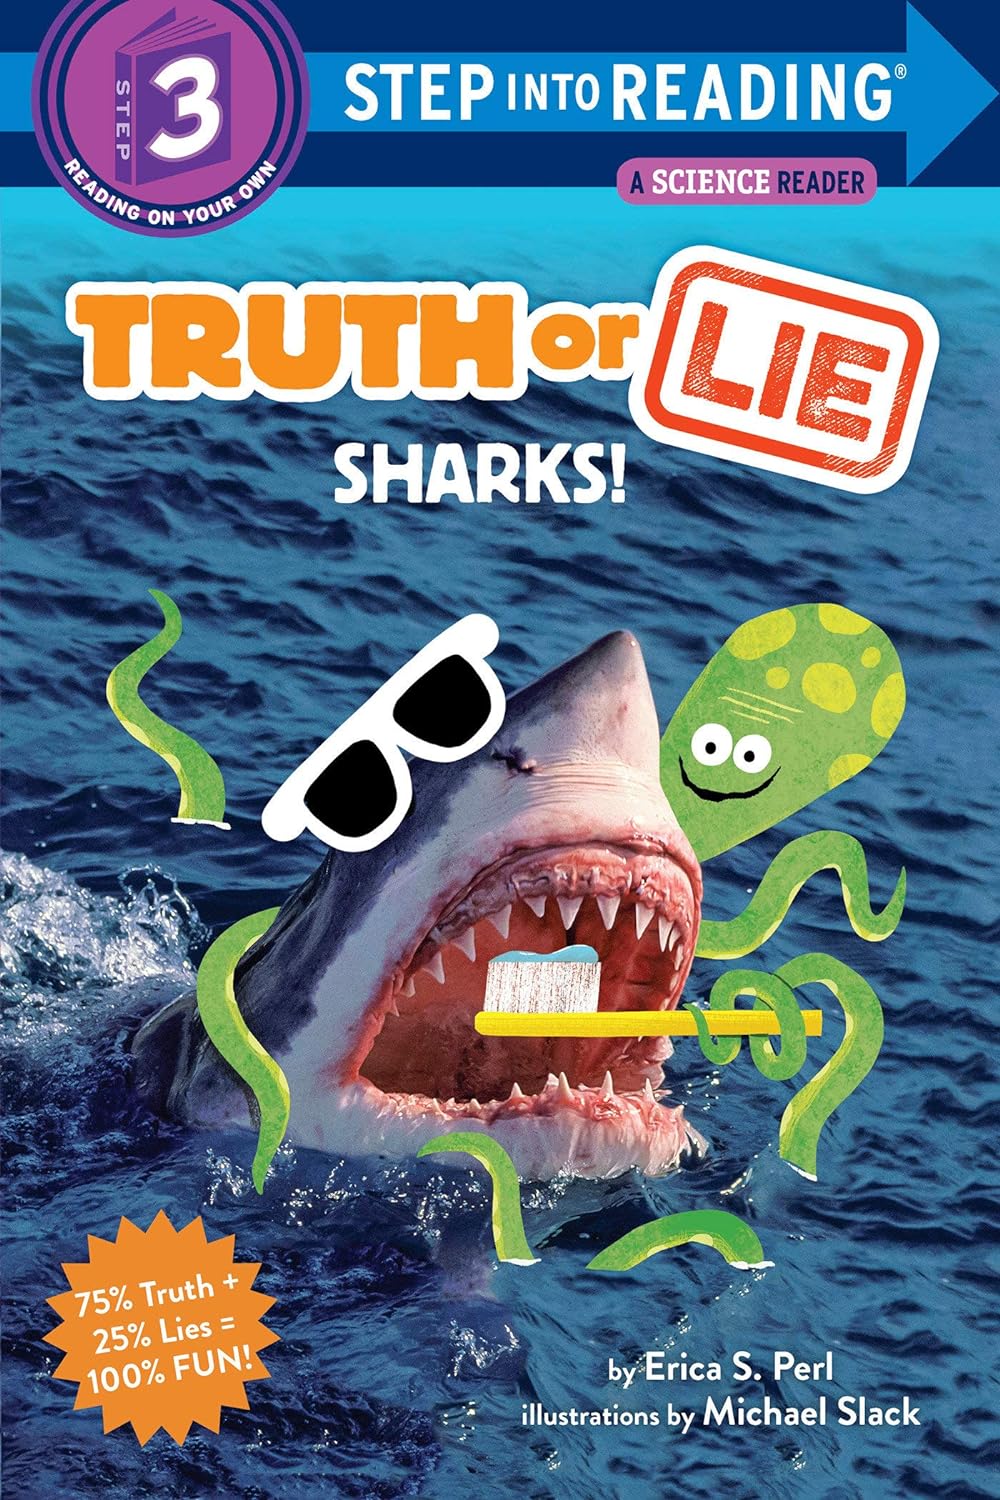 SIR(Step3):Truth or Lie:Sharks!